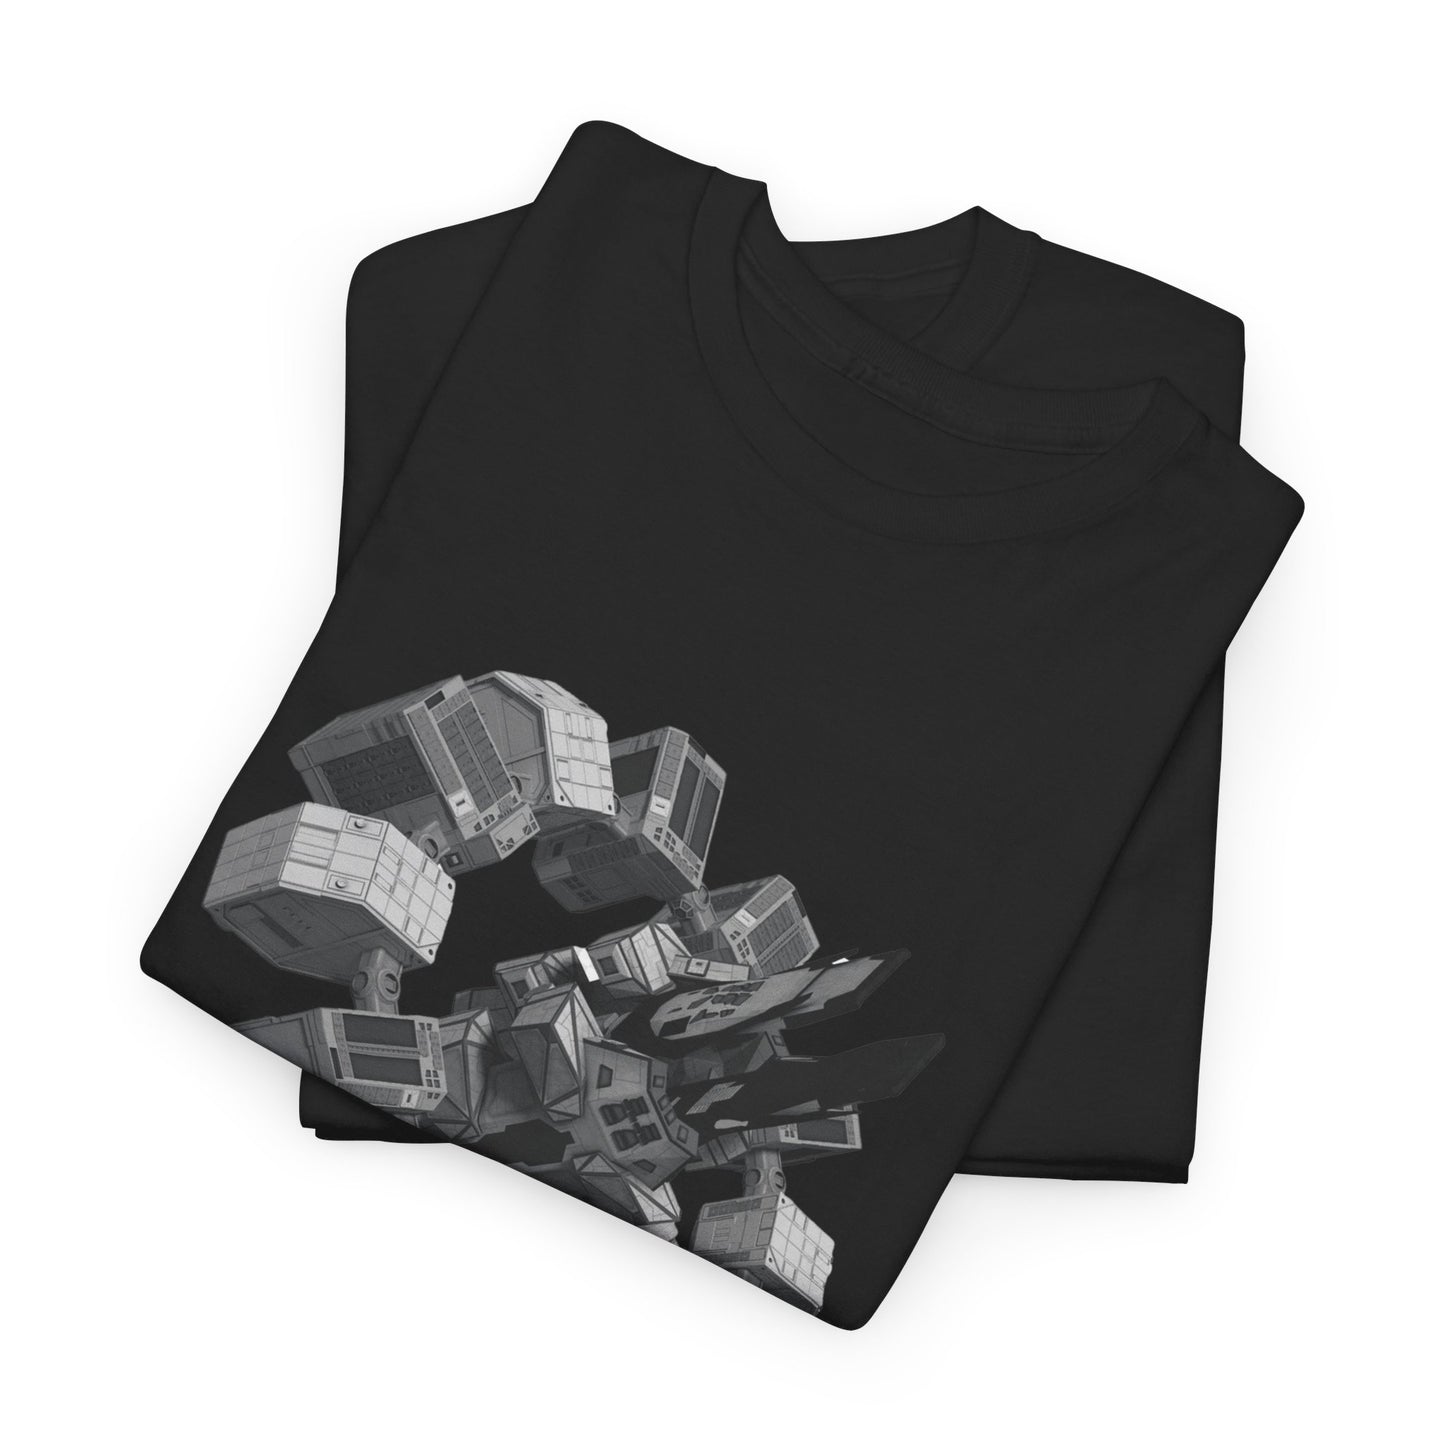 Interstellar - Endurance Printed T-Shirt